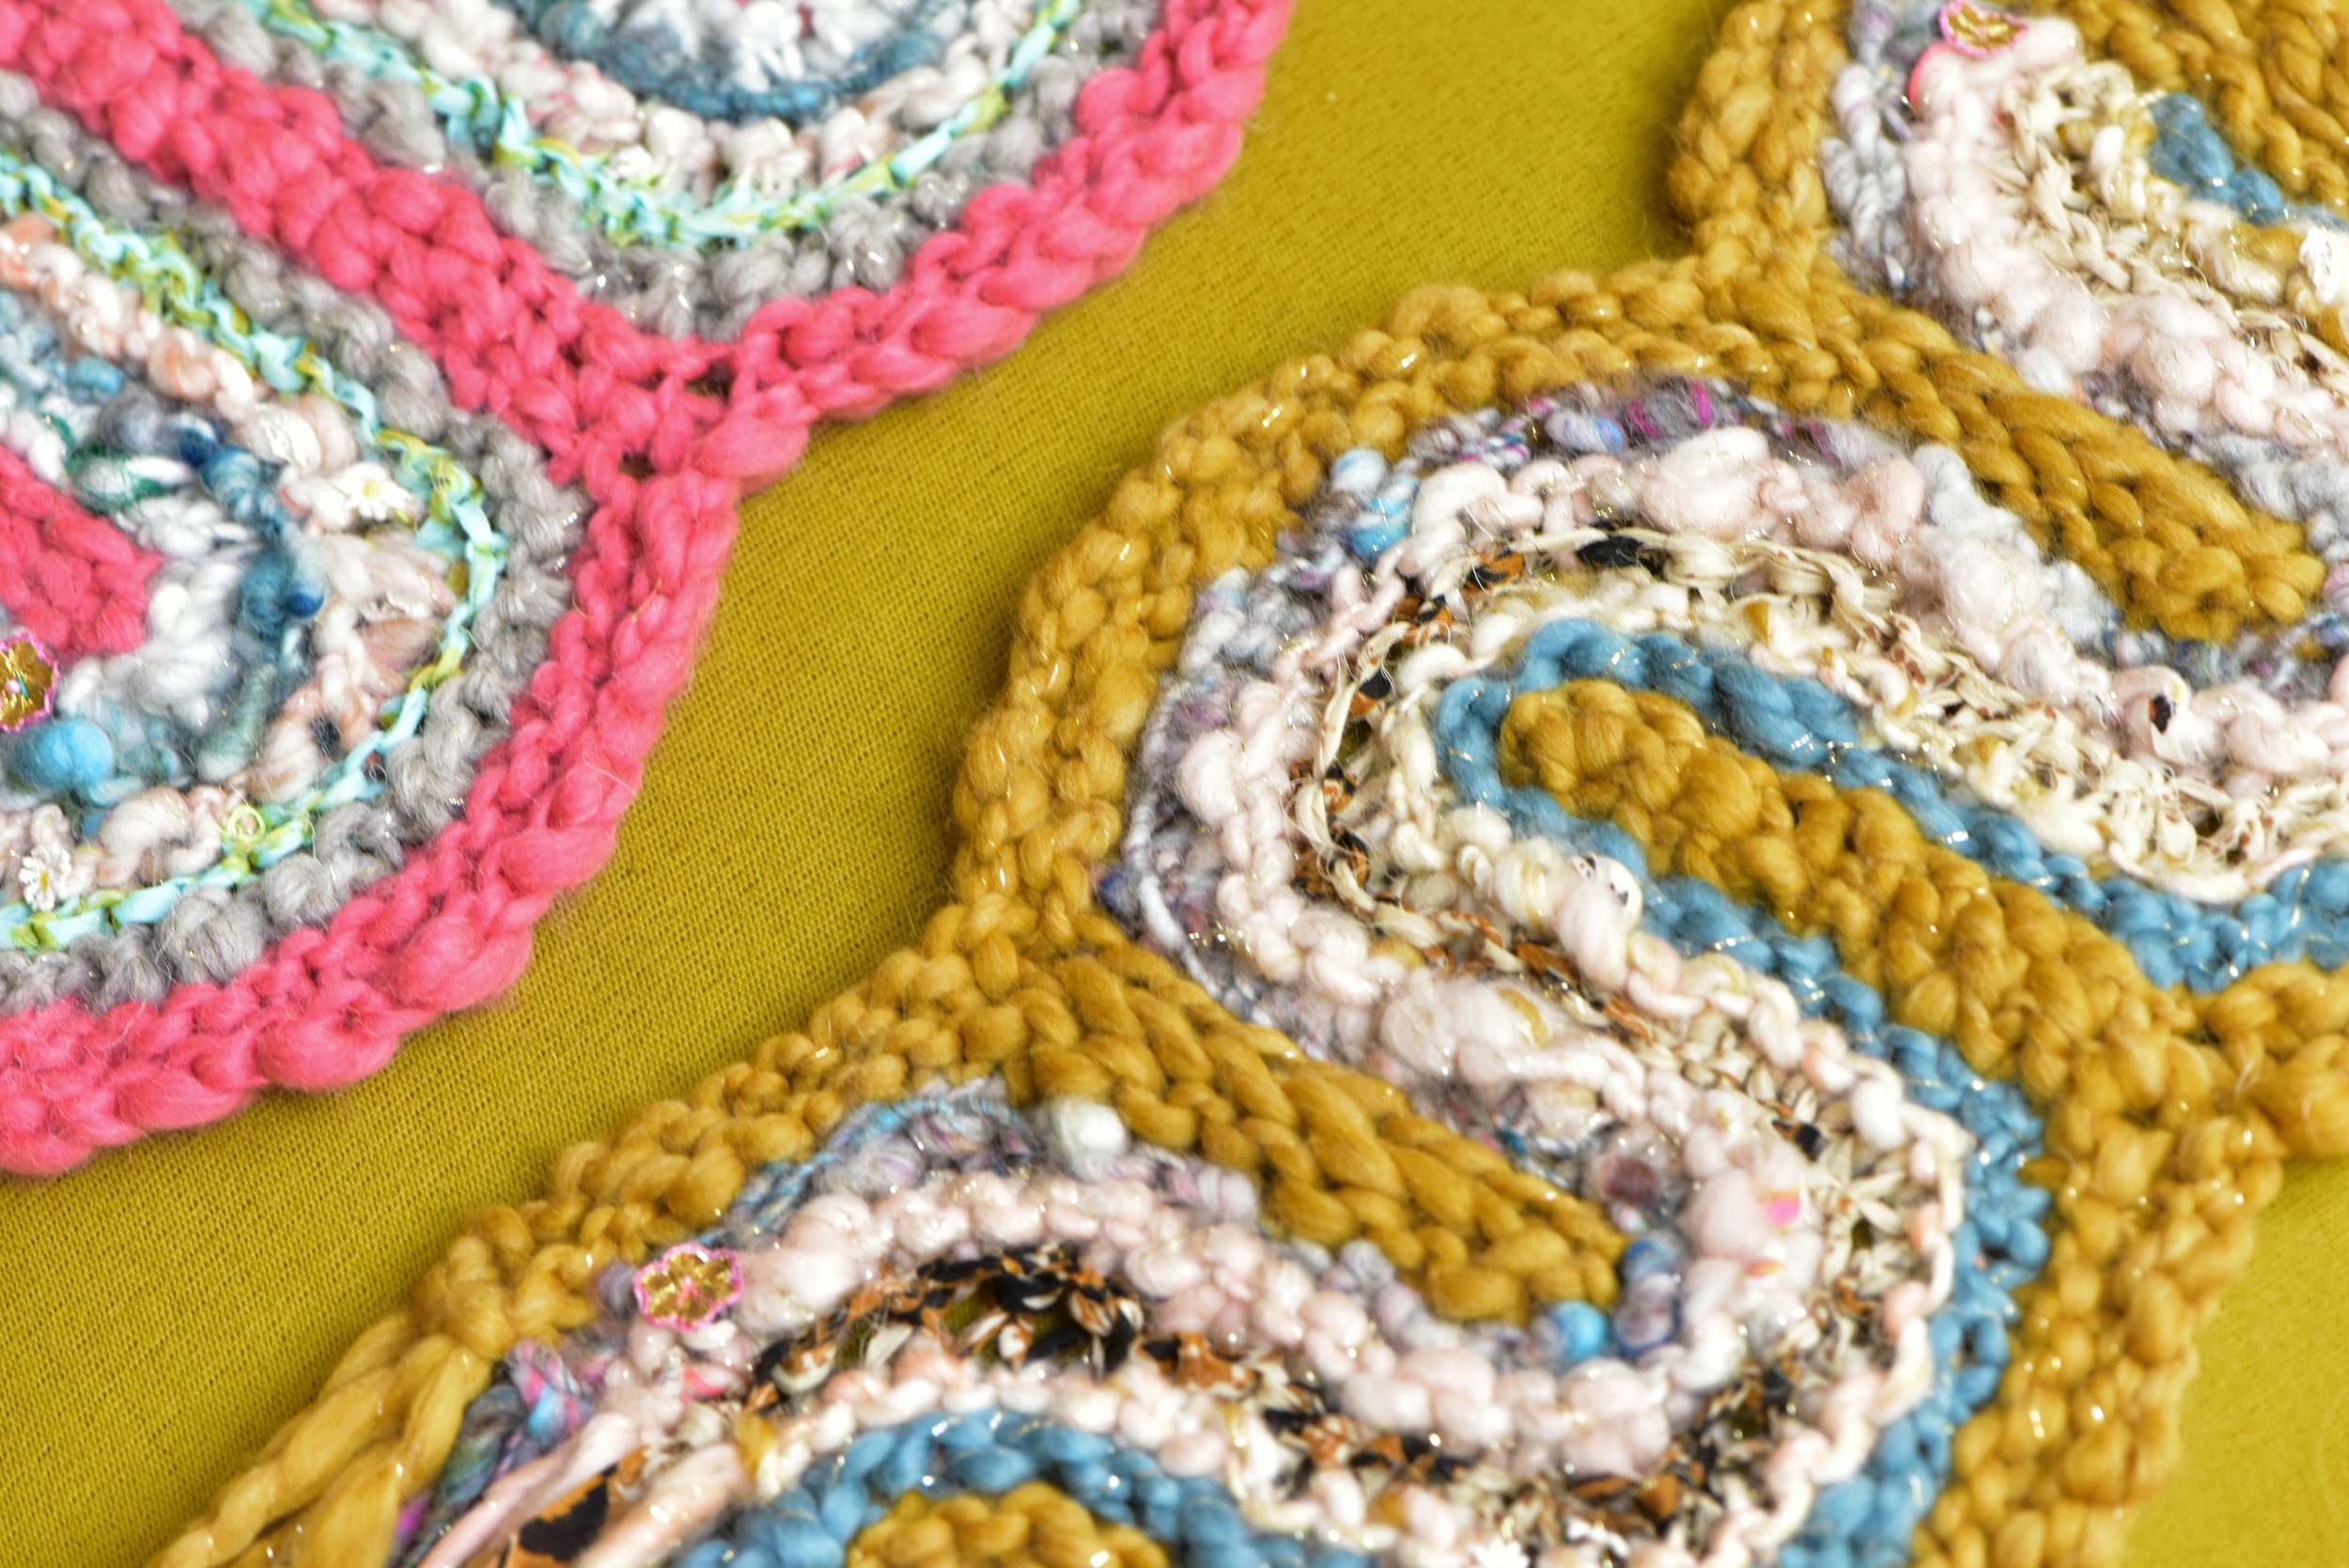 Crochet Poppy brooch / pin /decoration Crochet pattern by Crochet Luxe